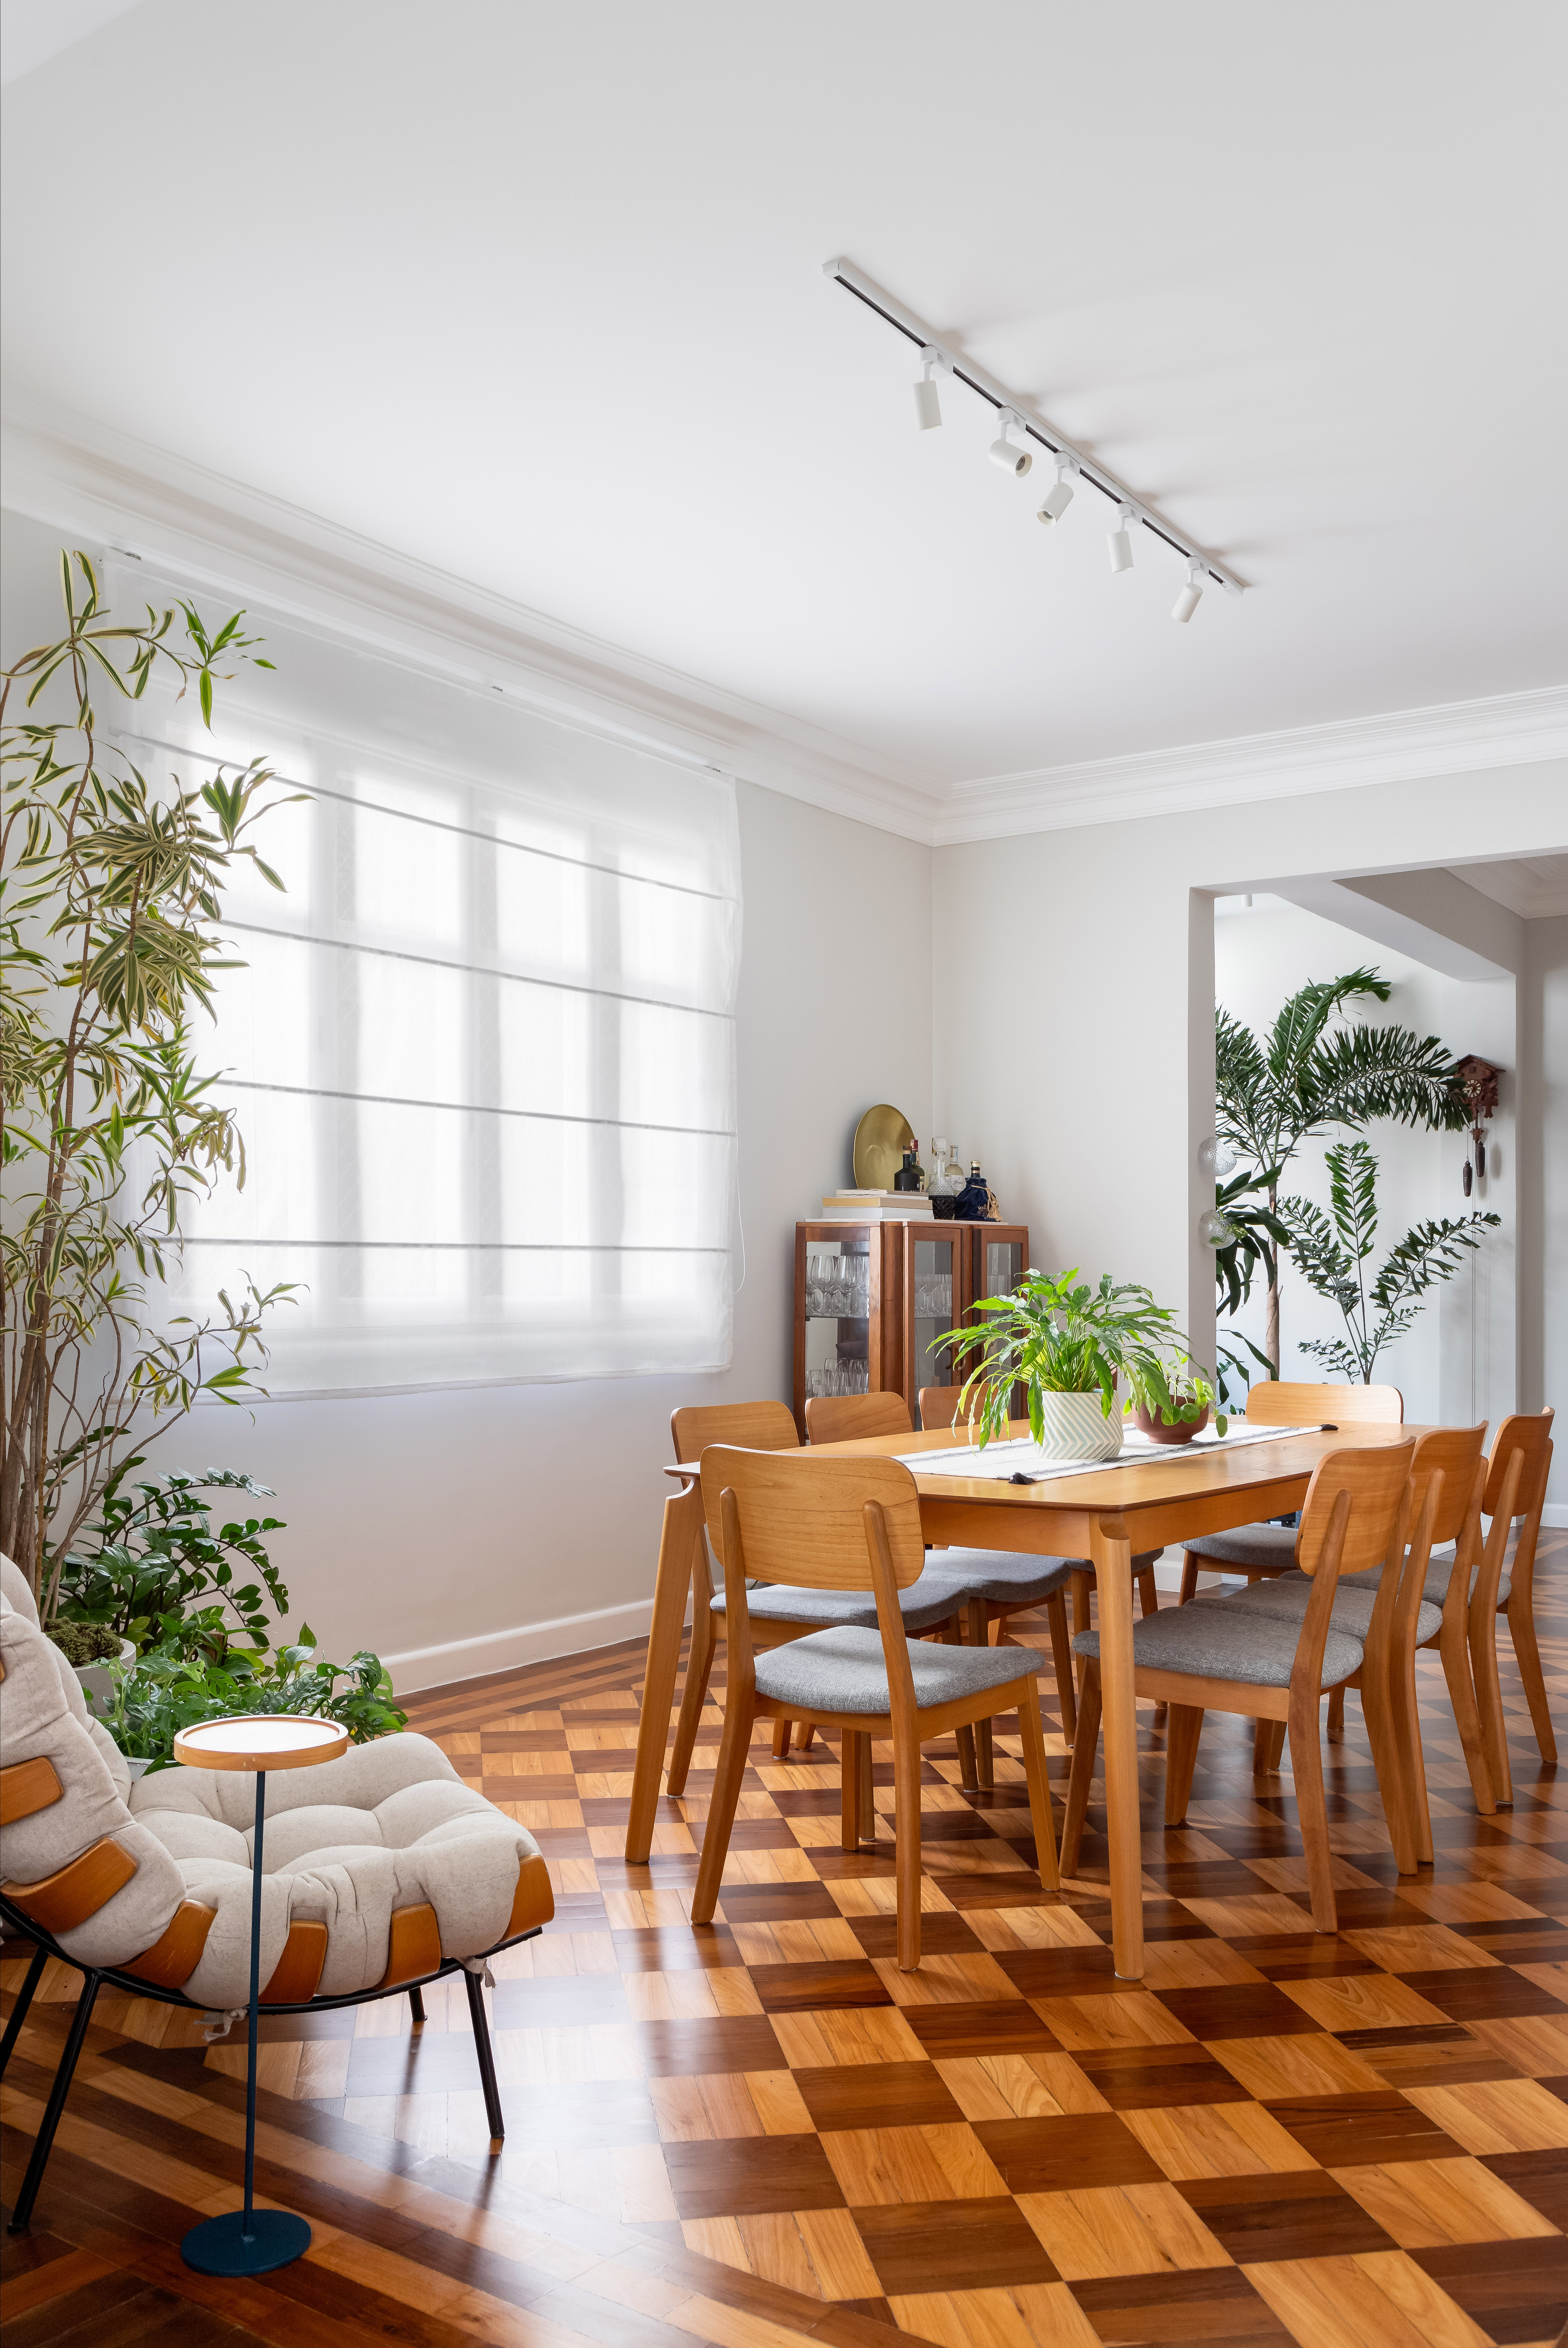 Piso de taco, janelas brancas e sancas dão charme parisiense a este apê. Projeto de Ana Paula Crivelenti. Na foto, sala de estar, mesa grande de madeira.